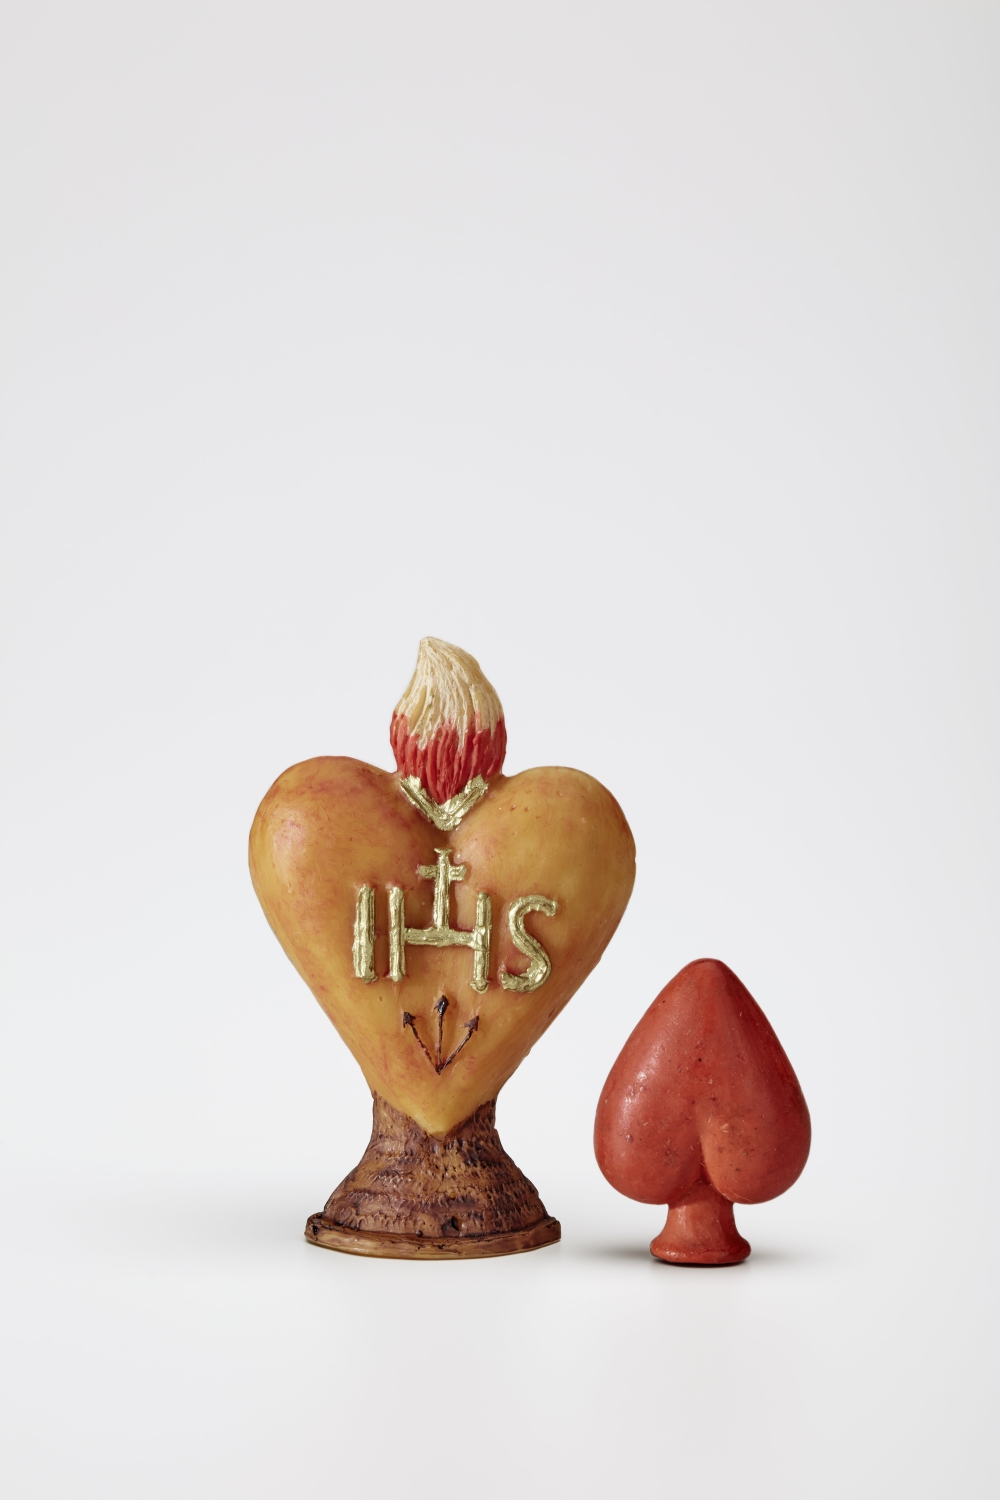 Herzvotive aus Wachs, 19. Jahrhundert, © Salzburg Museum